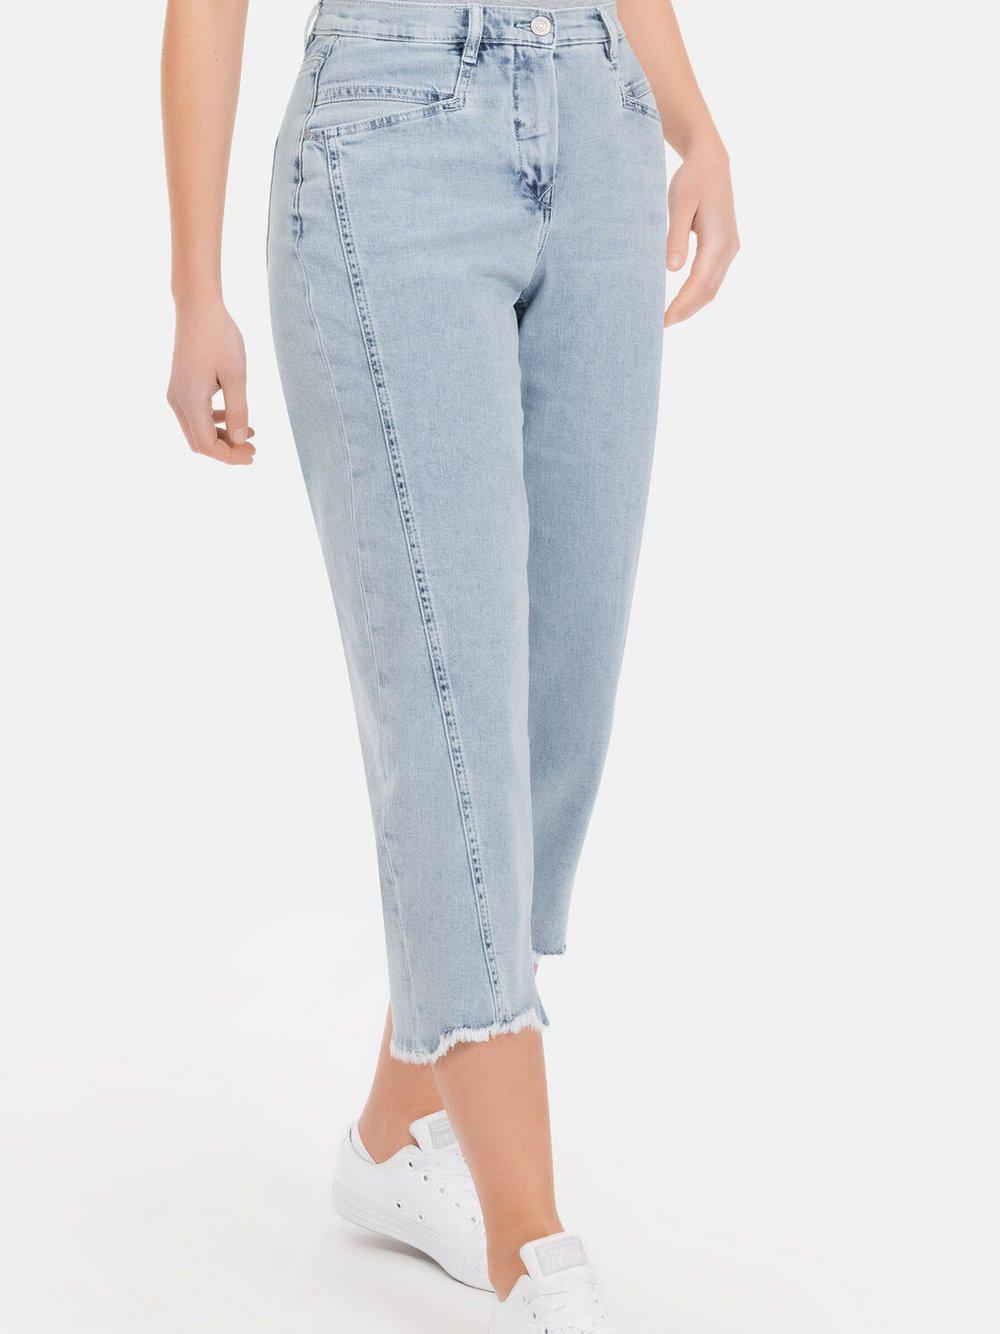 RECOVER pants Jeans Damen Baumwolle, blau von Recover Pants